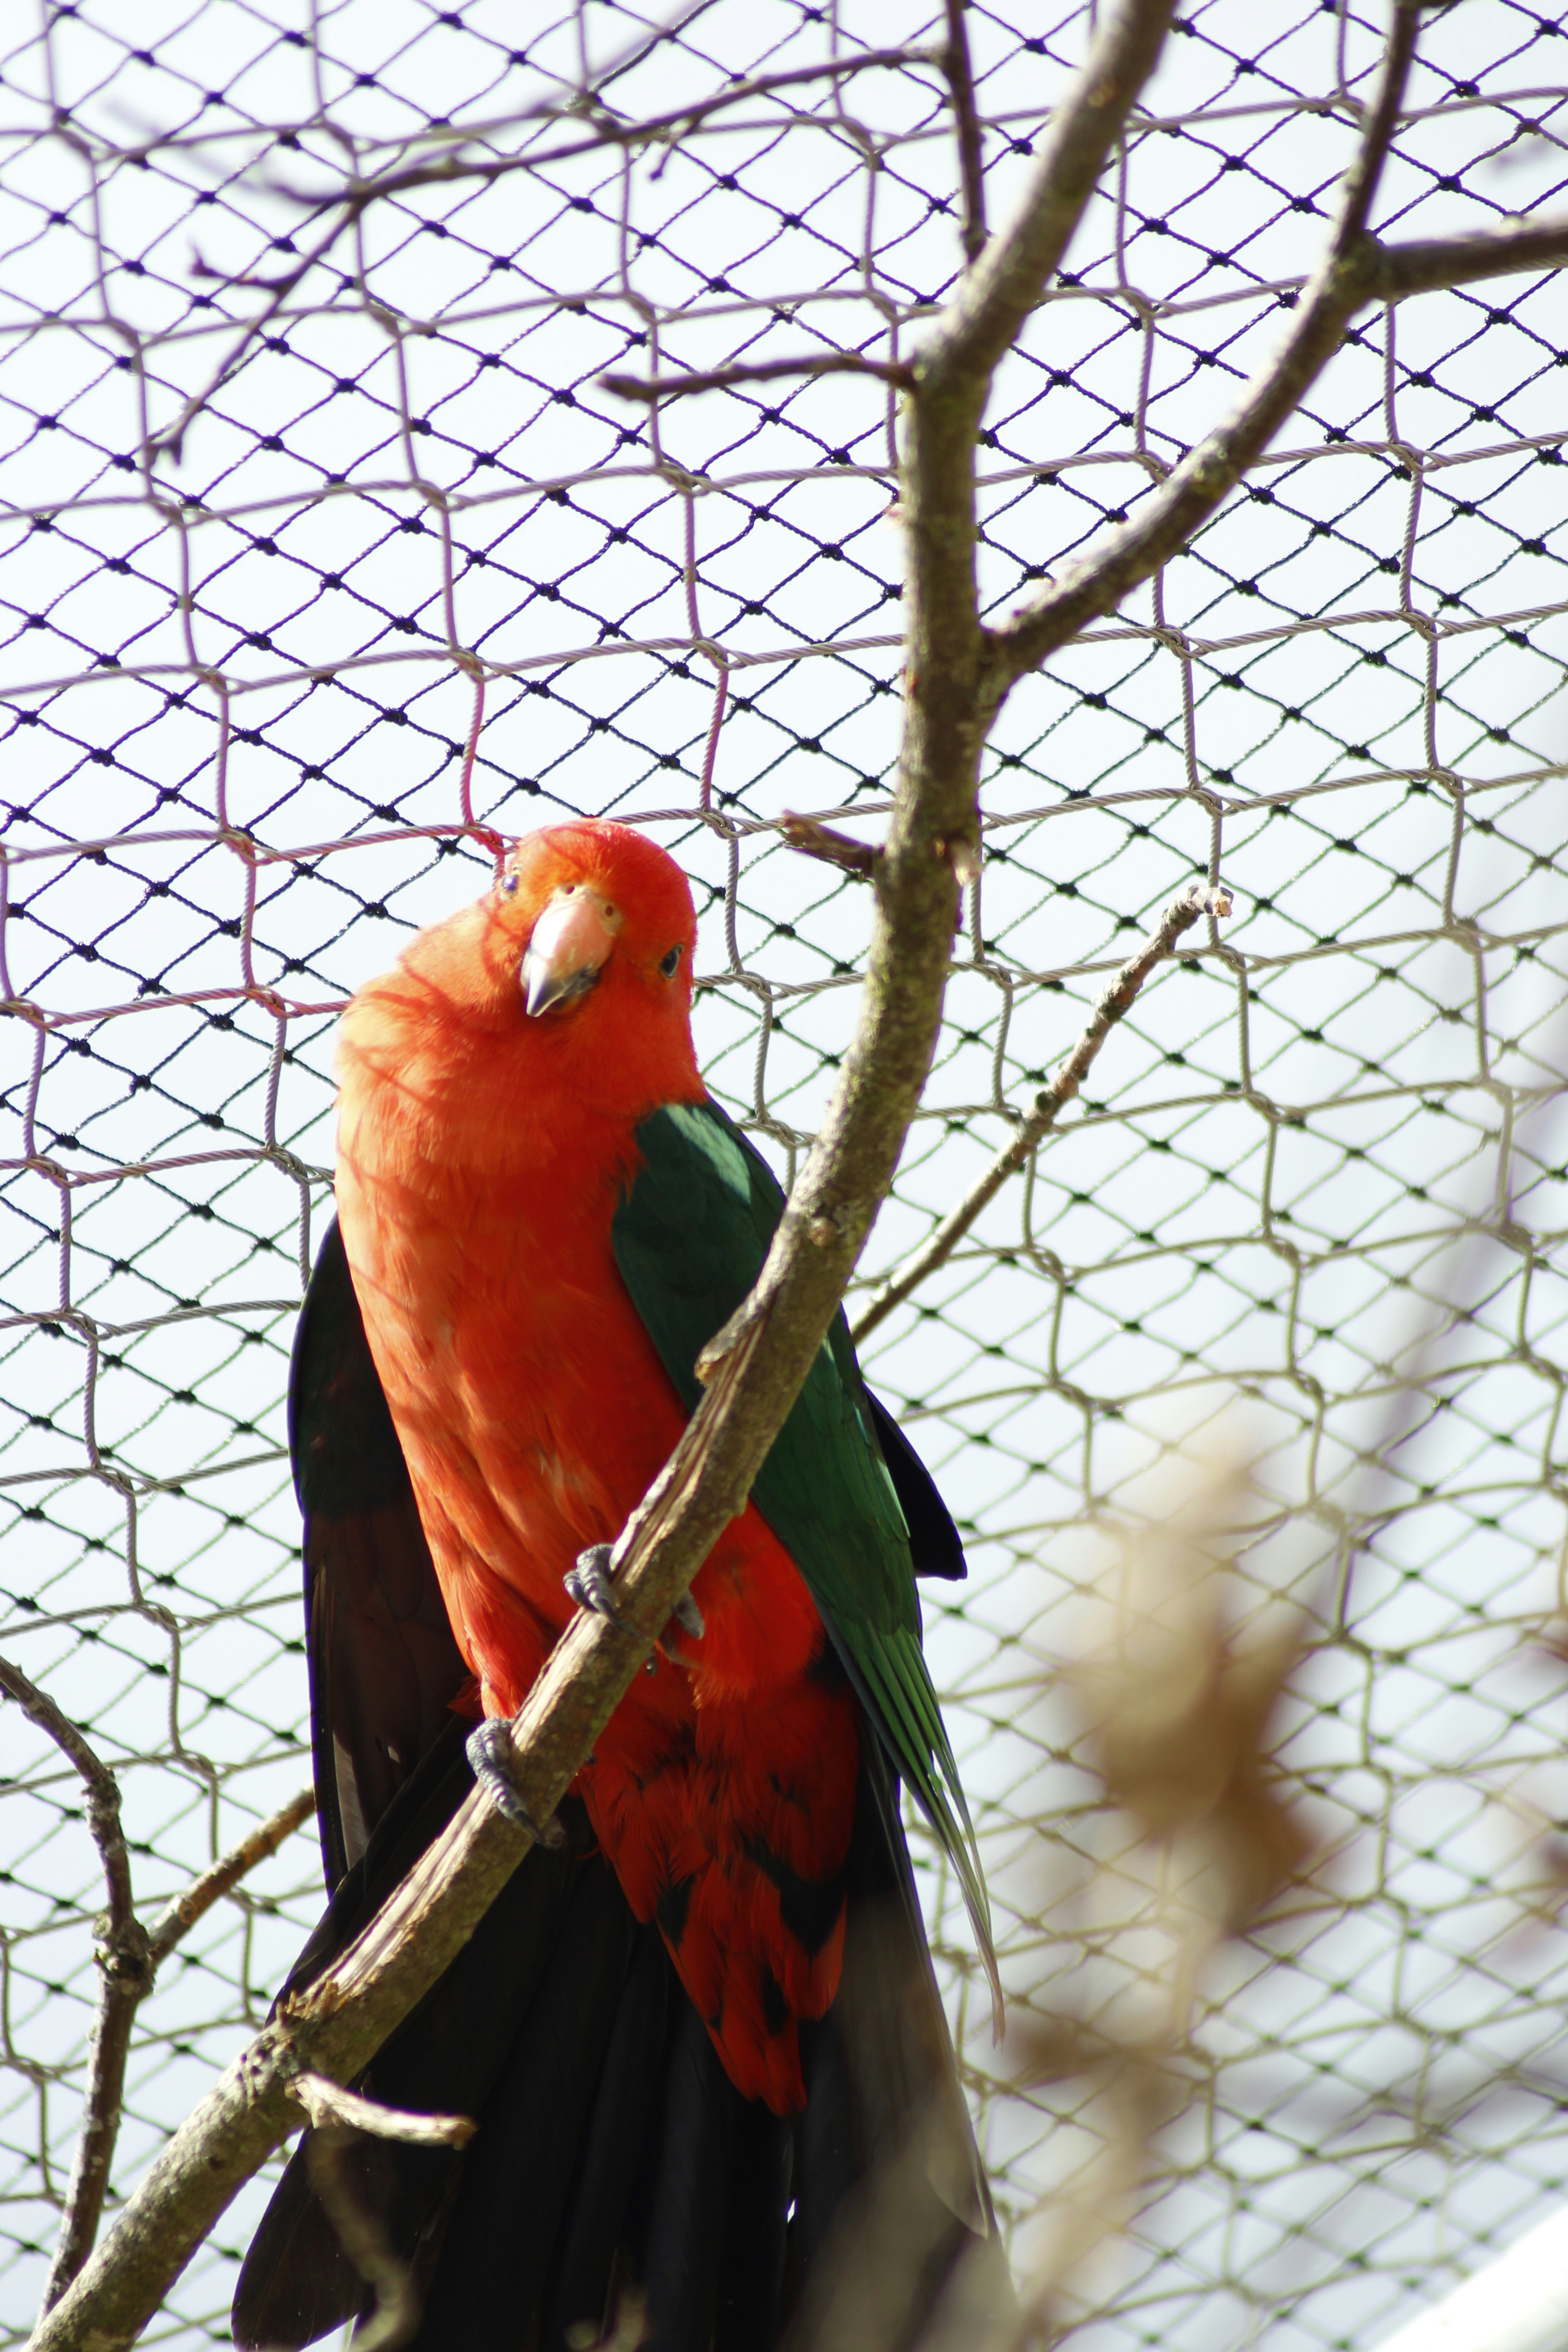 A Red Parakeet